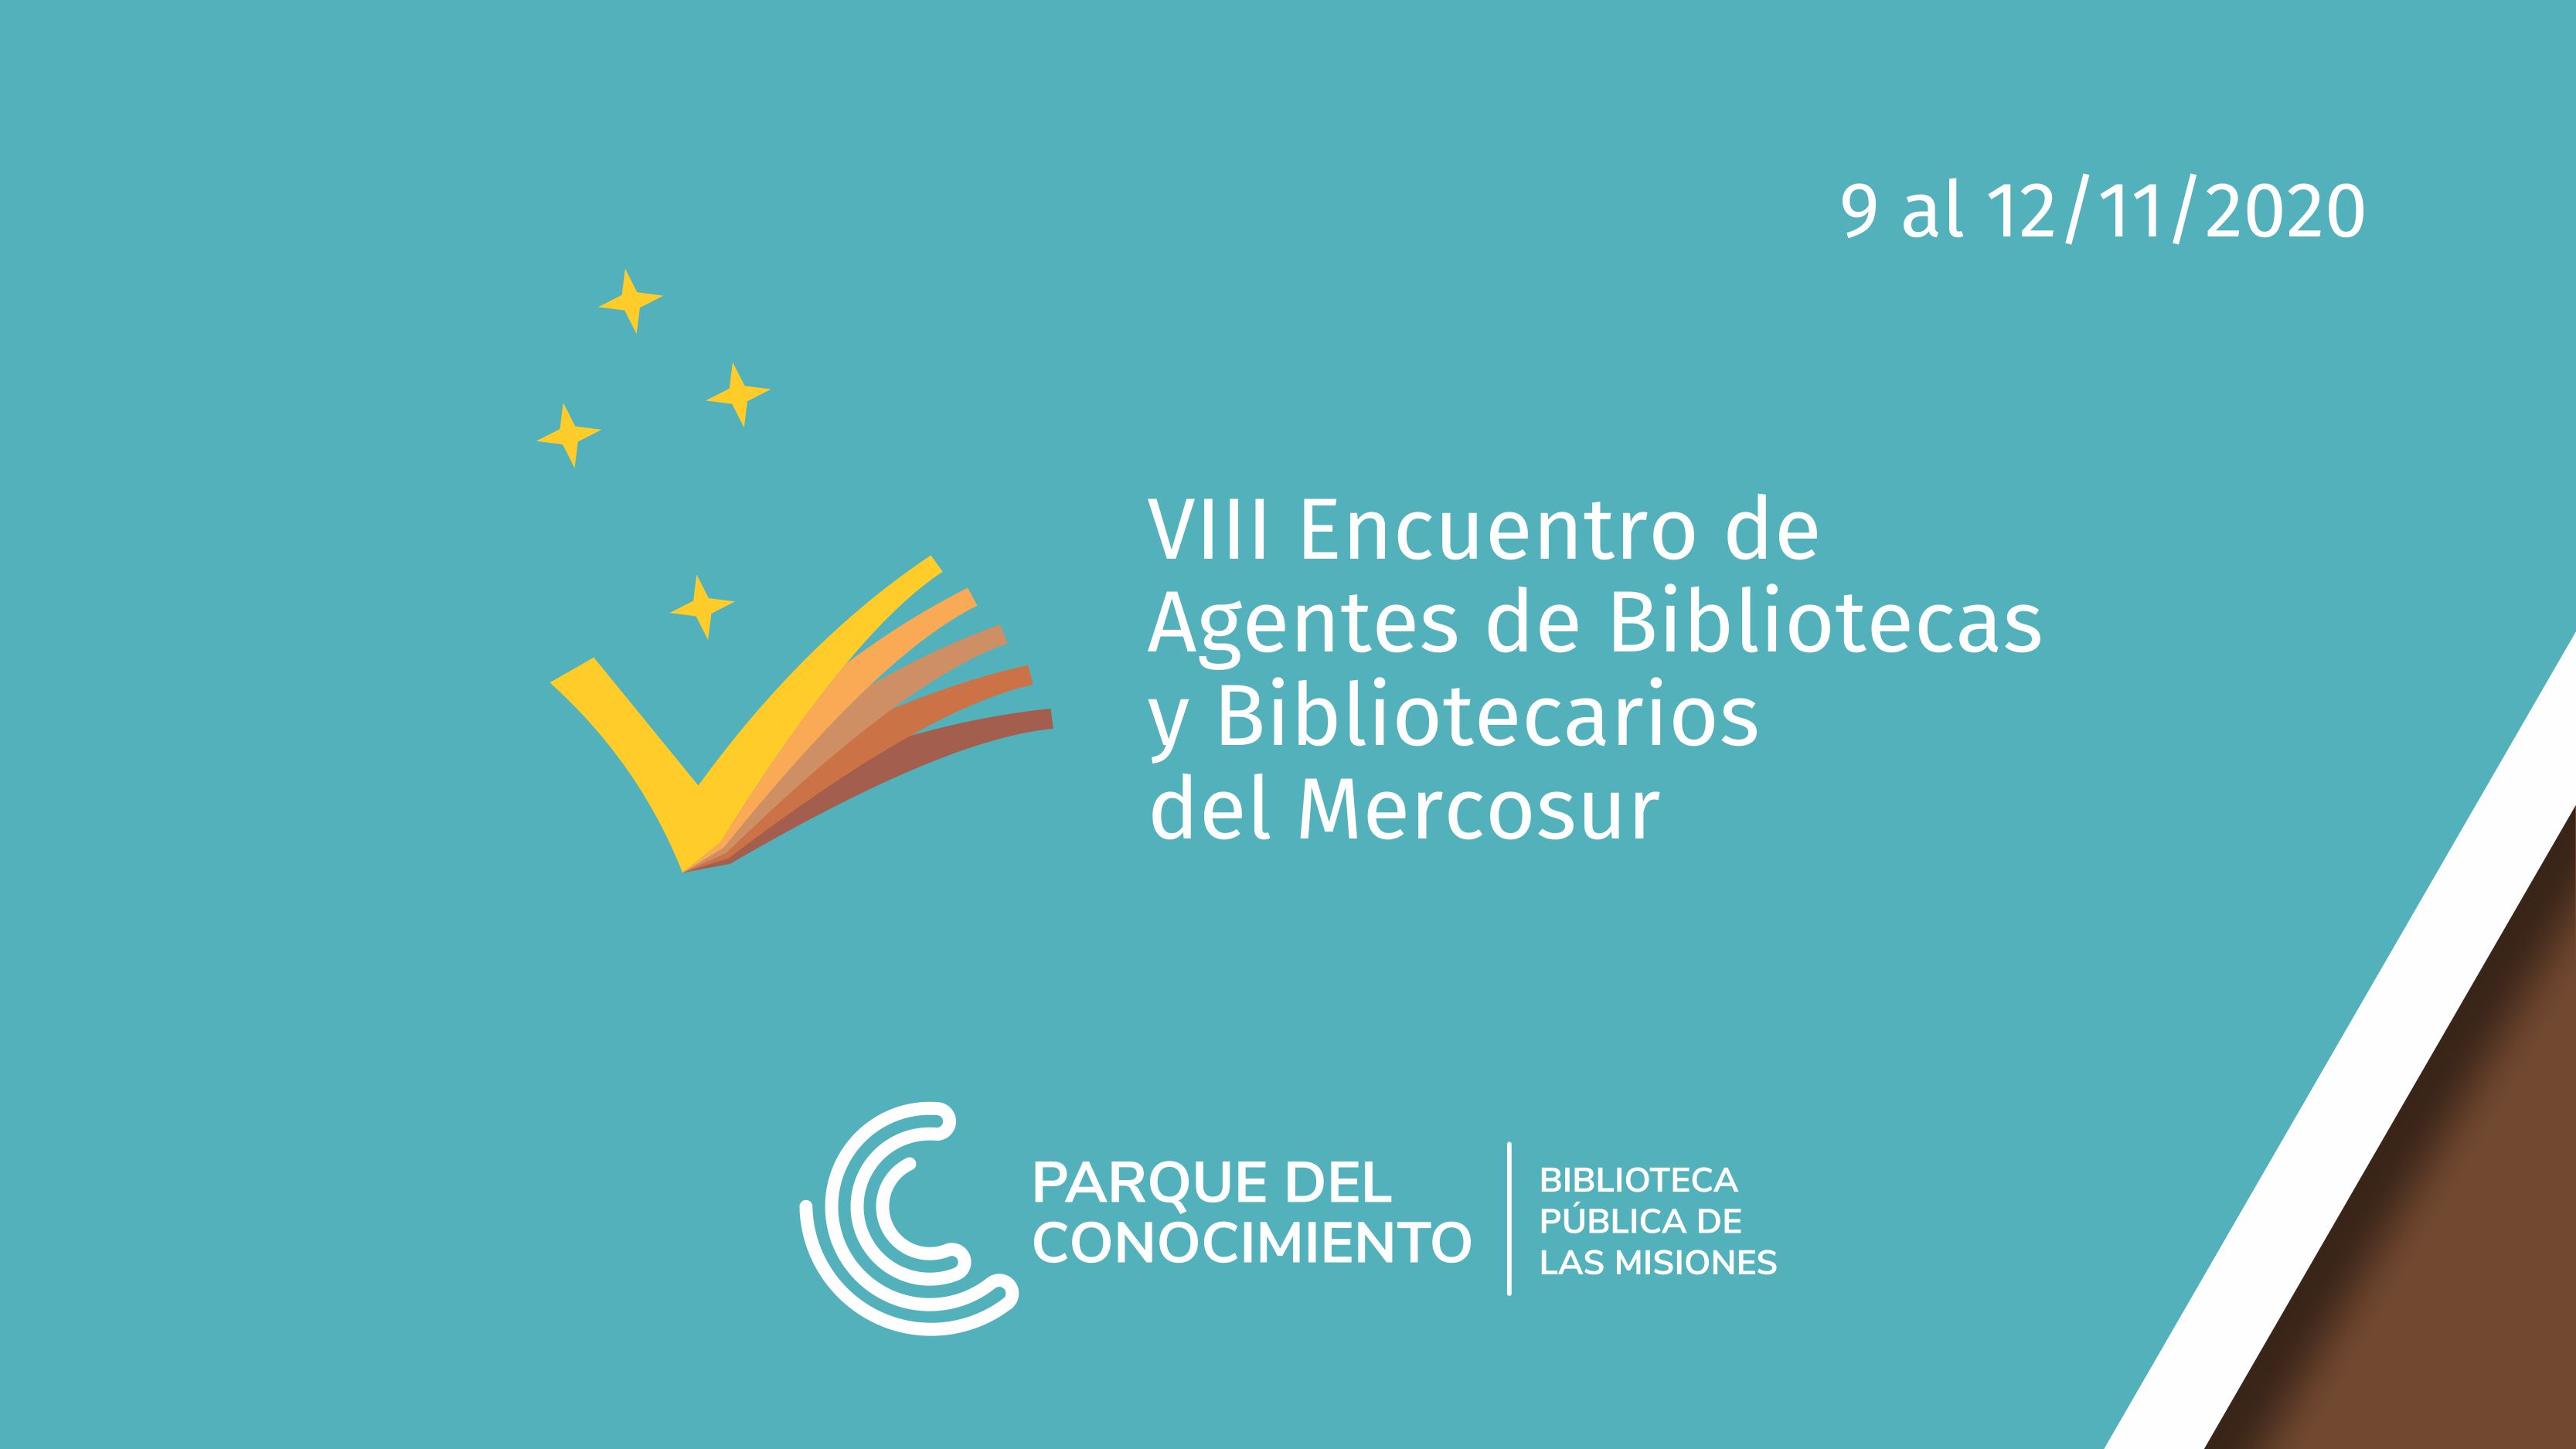 VIII Encuentro de Agentes de Bibliotecas y Bibliotecarios del Mercosur